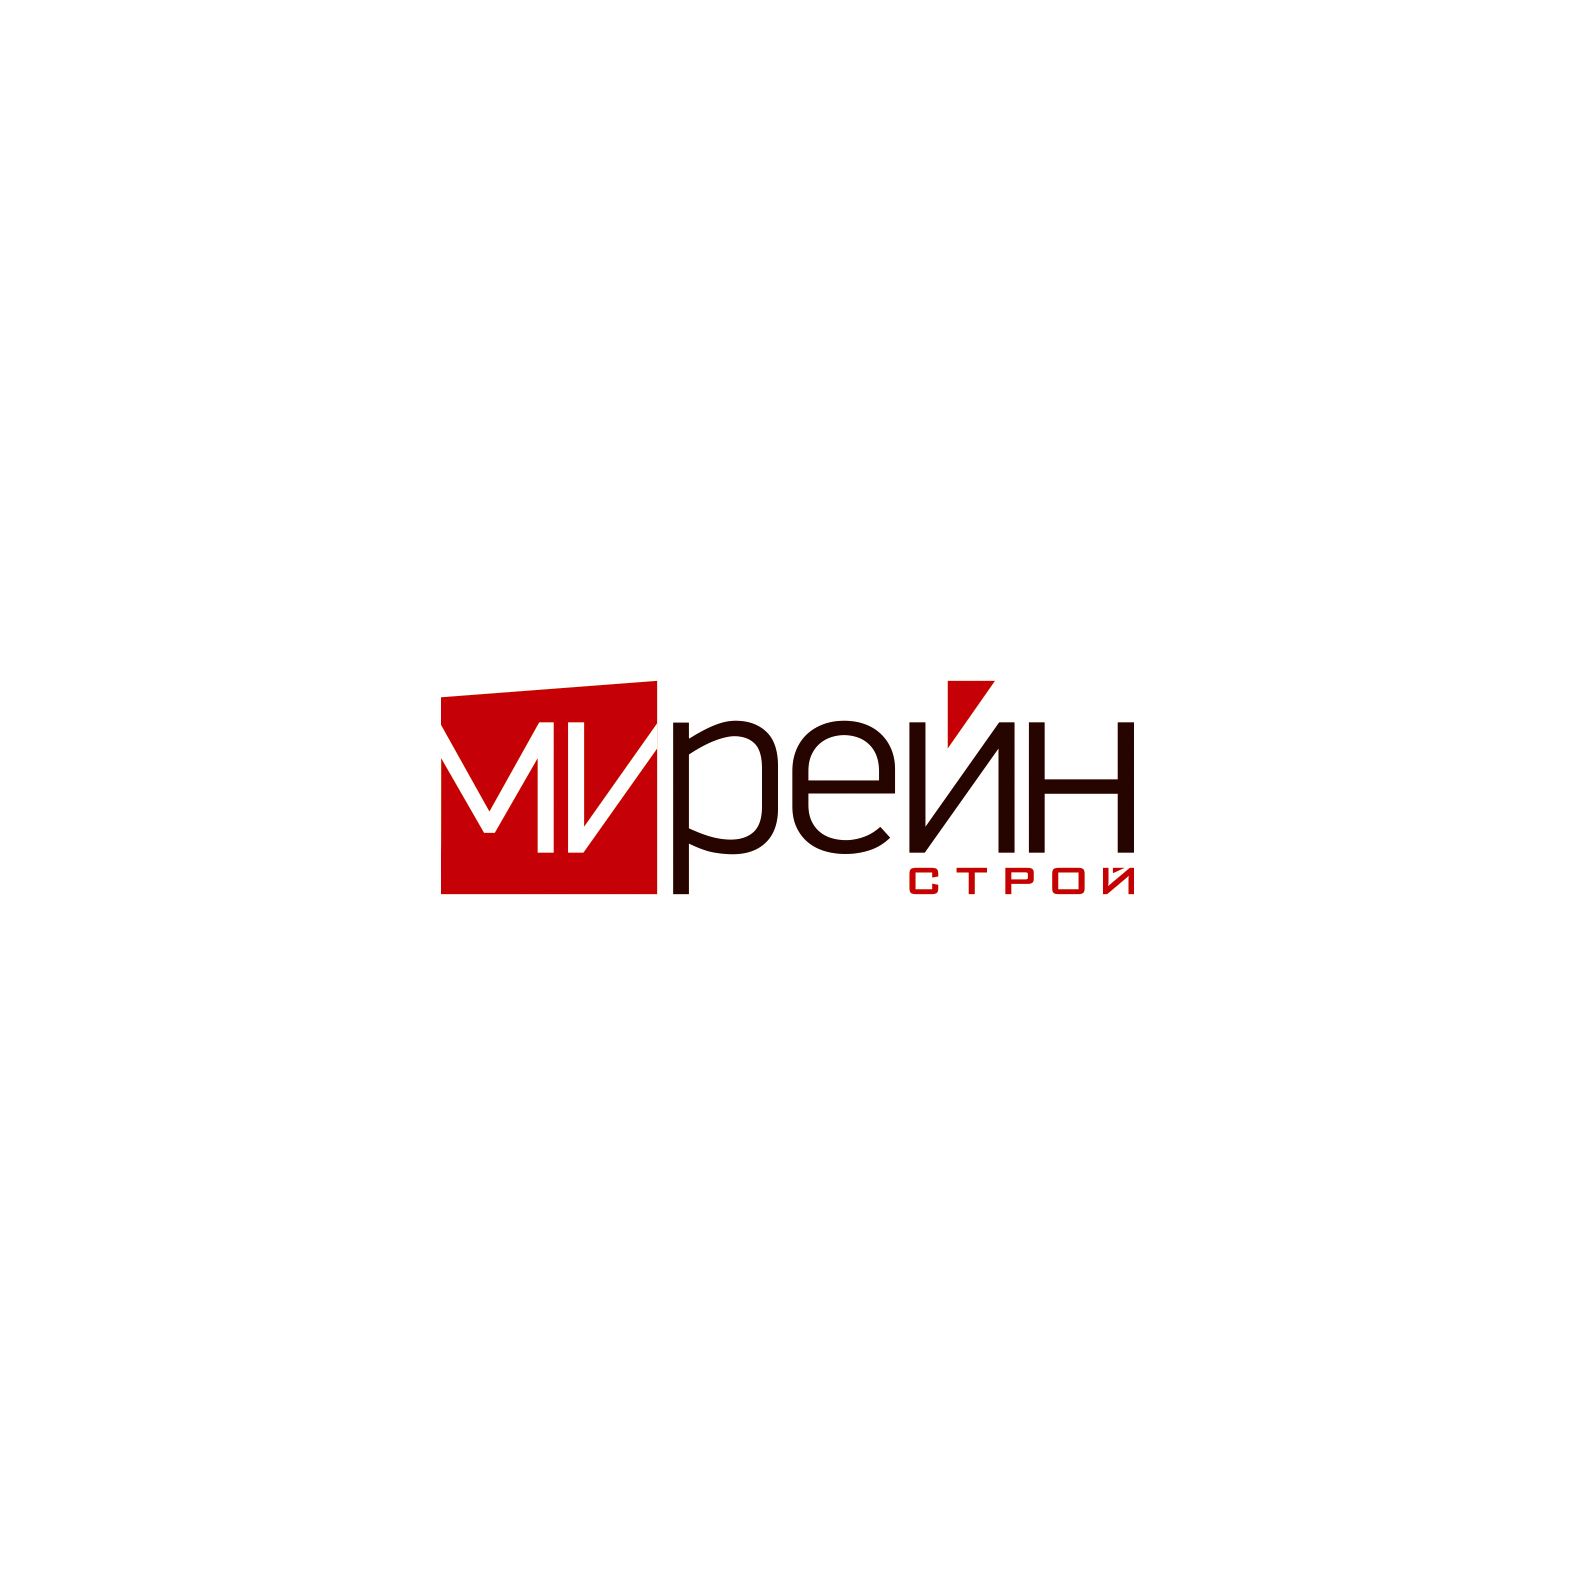 Логотип для группы компаний Мирейн - дизайнер artmixen